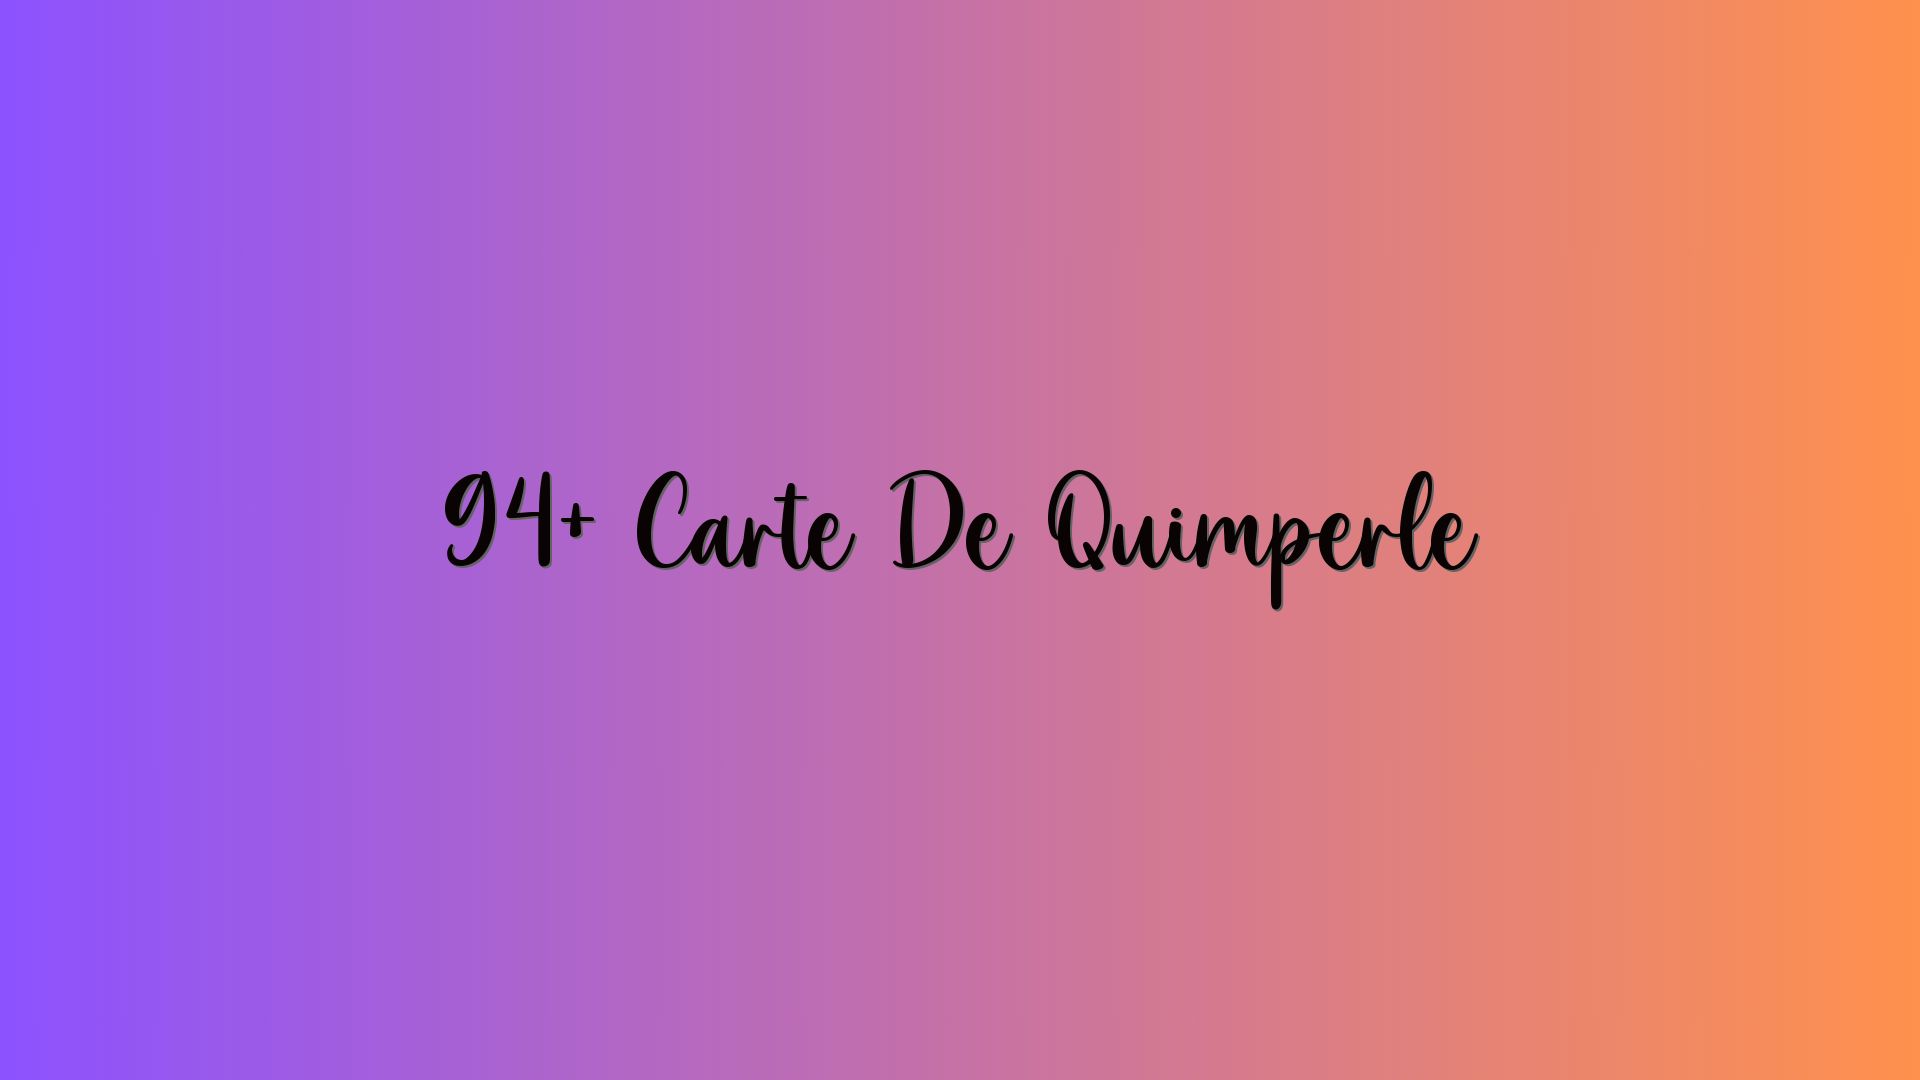 94+ Carte De Quimperlé